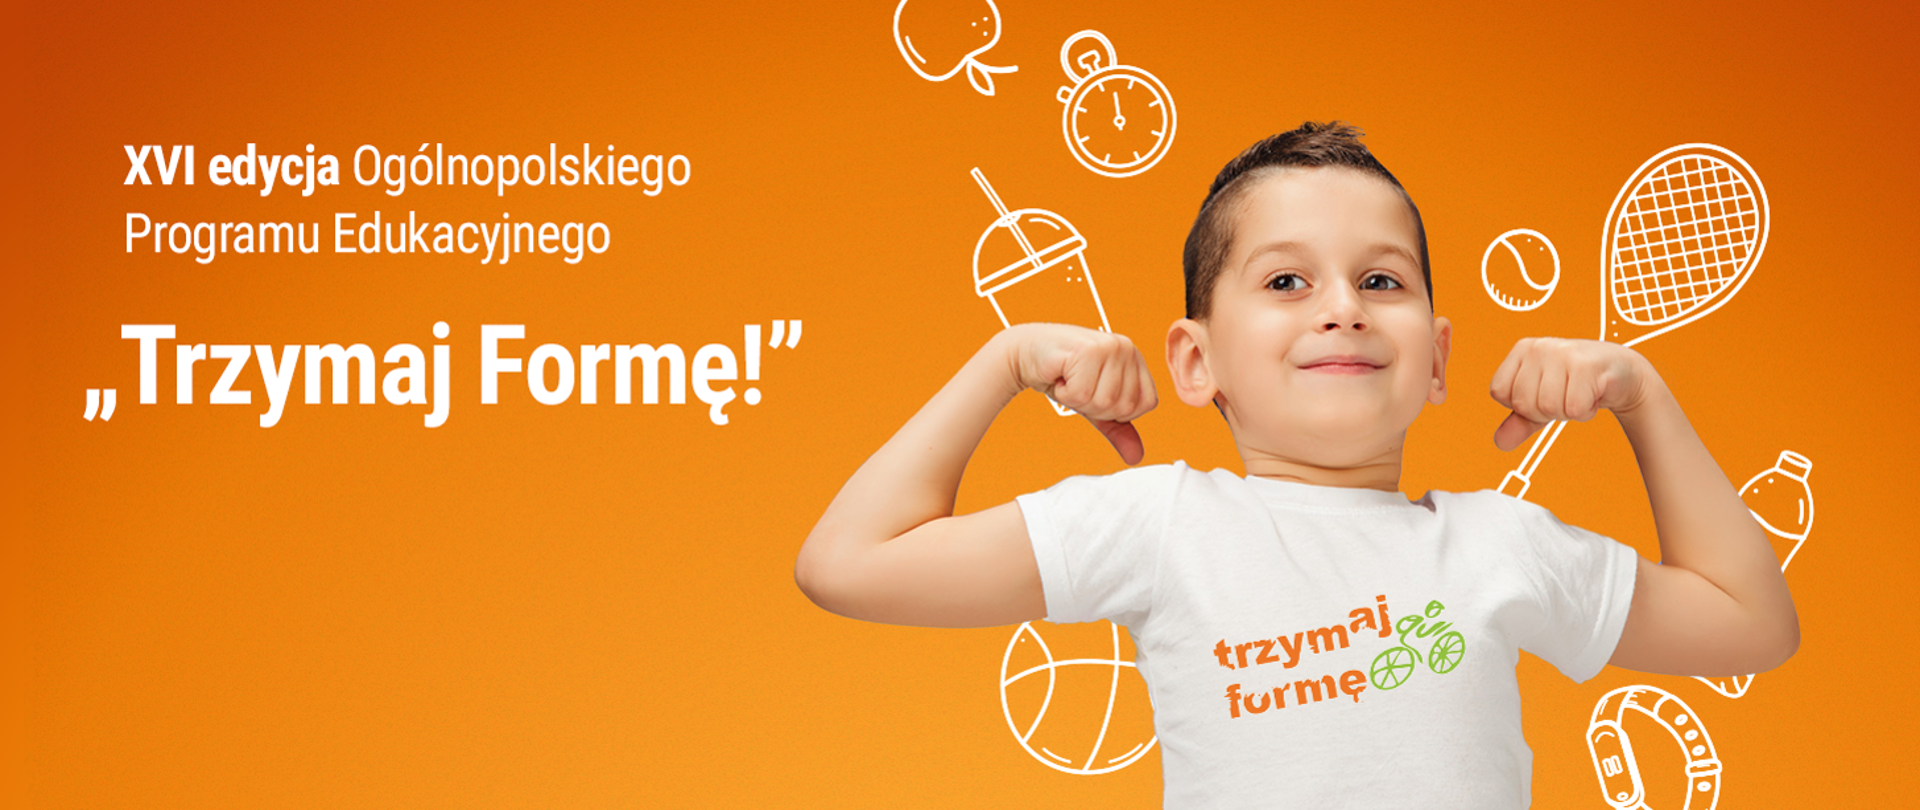 Na pomarańczowym tle znajduje się dziecko, chłopiec, napinający mięśnie. Obok jest napis „XVI edycja Ogólnopolskiego Programu Edukacyjnego "Trzymaj Formę!"”